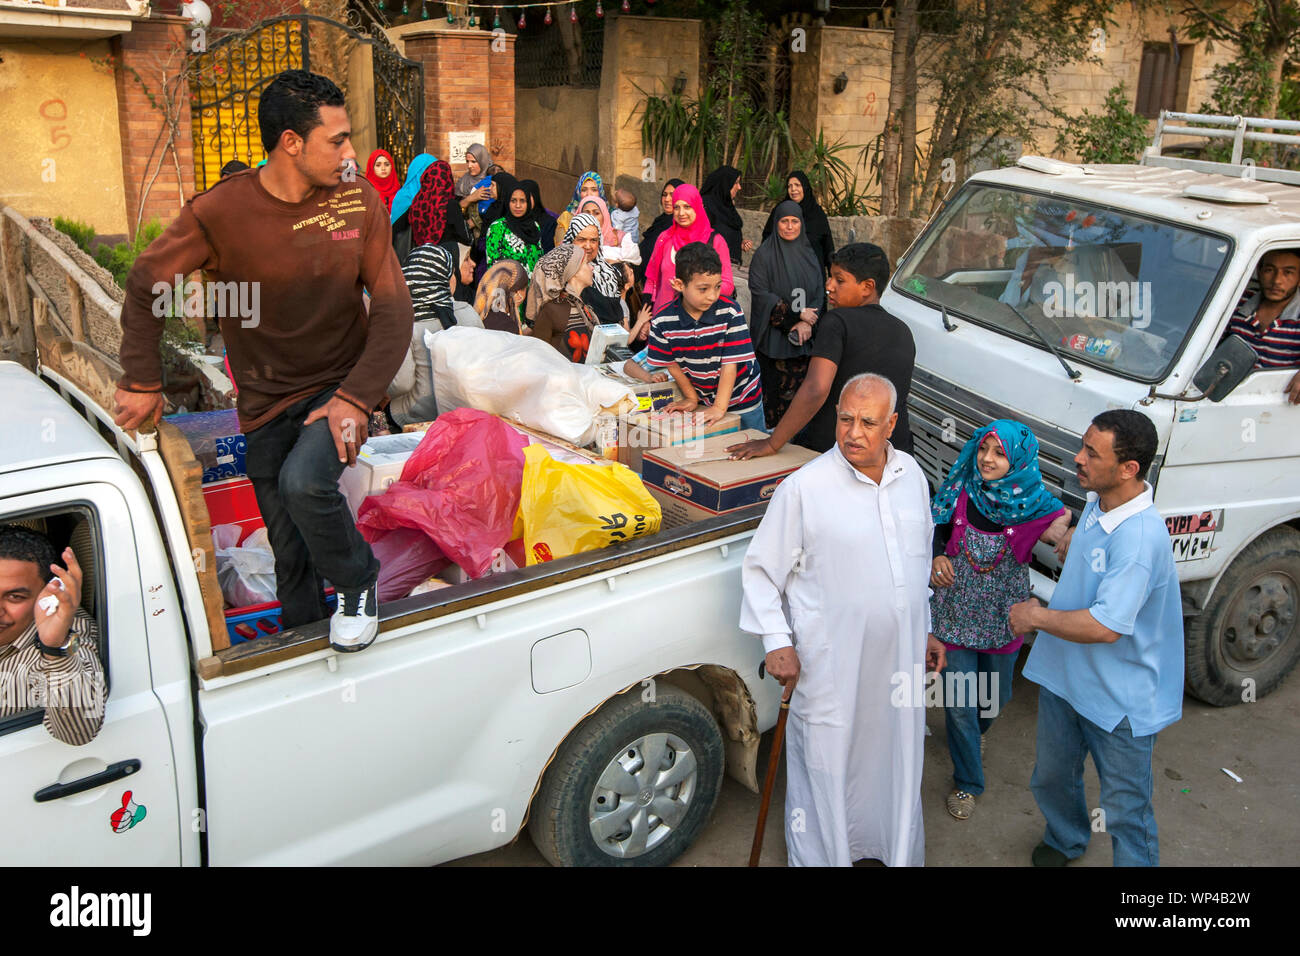 Una concurrida reunión familiar en una calle del barrio de Giza El Cairo en Egipto. Las familias egipcias se reúnen regularmente para socializar. Foto de stock